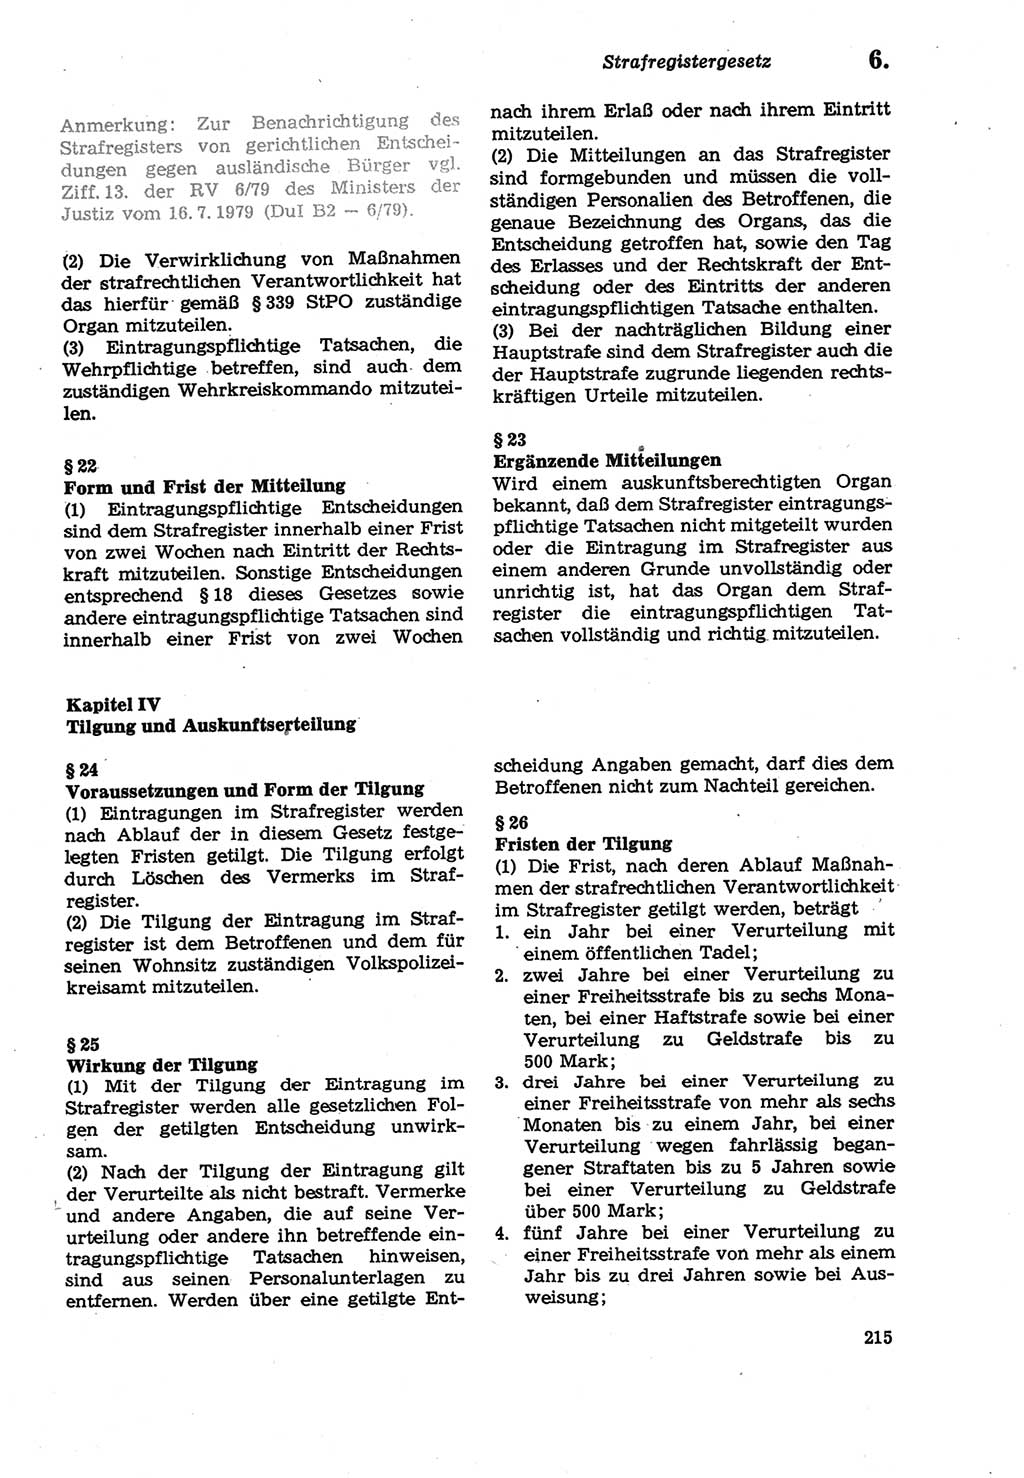 Strafprozeßordnung (StPO) der Deutschen Demokratischen Republik (DDR) sowie angrenzende Gesetze und Bestimmungen 1979, Seite 215 (StPO DDR Ges. Best. 1979, S. 215)